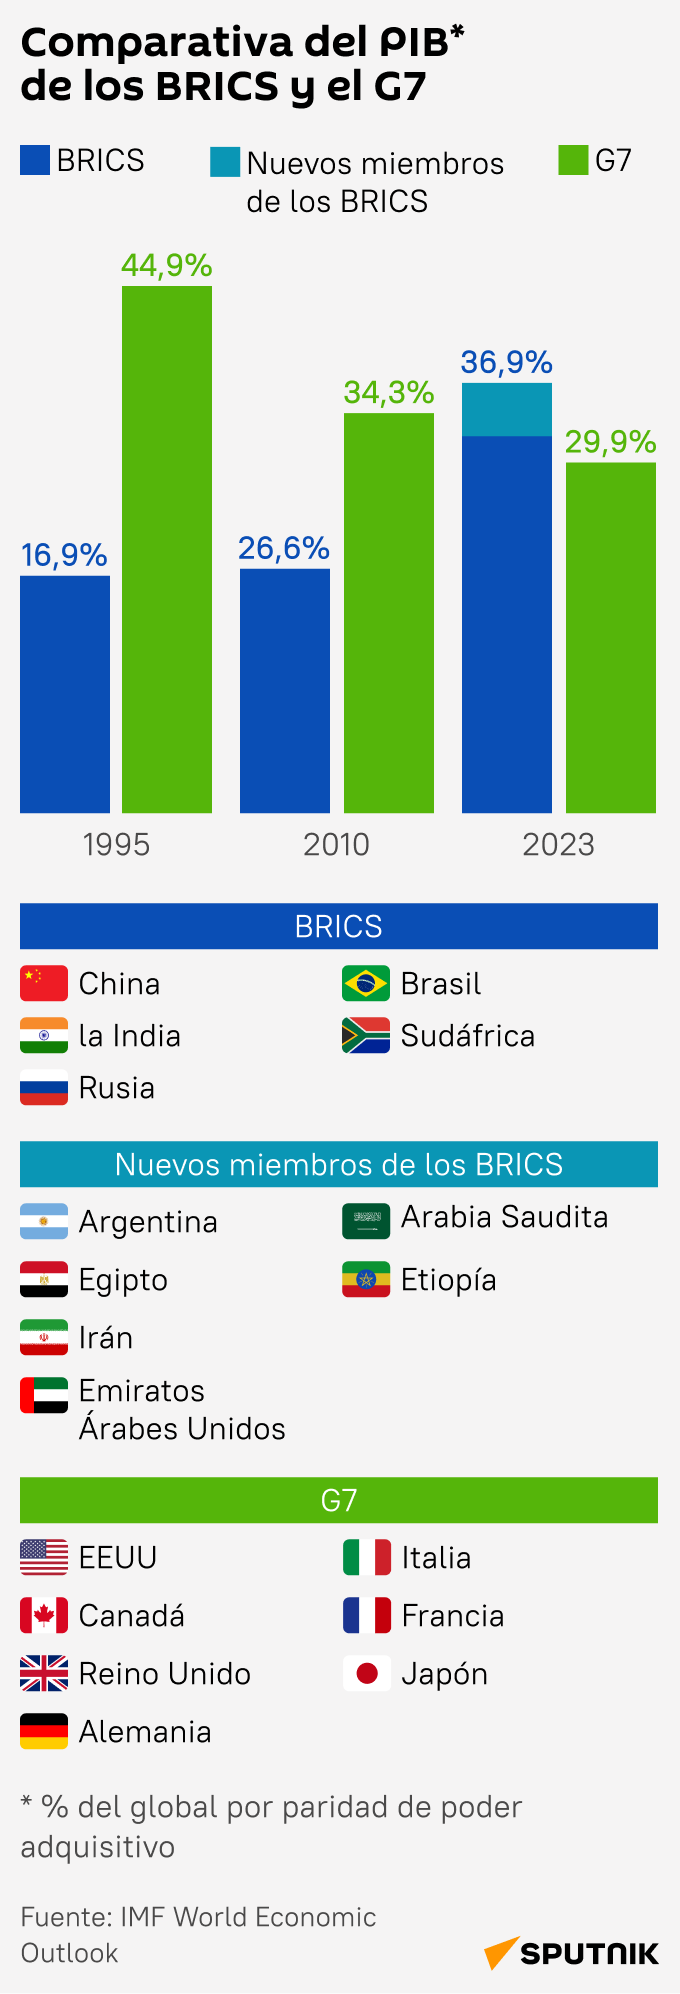 Comparativa del PIB del G7 y los BRICS - Sputnik Mundo